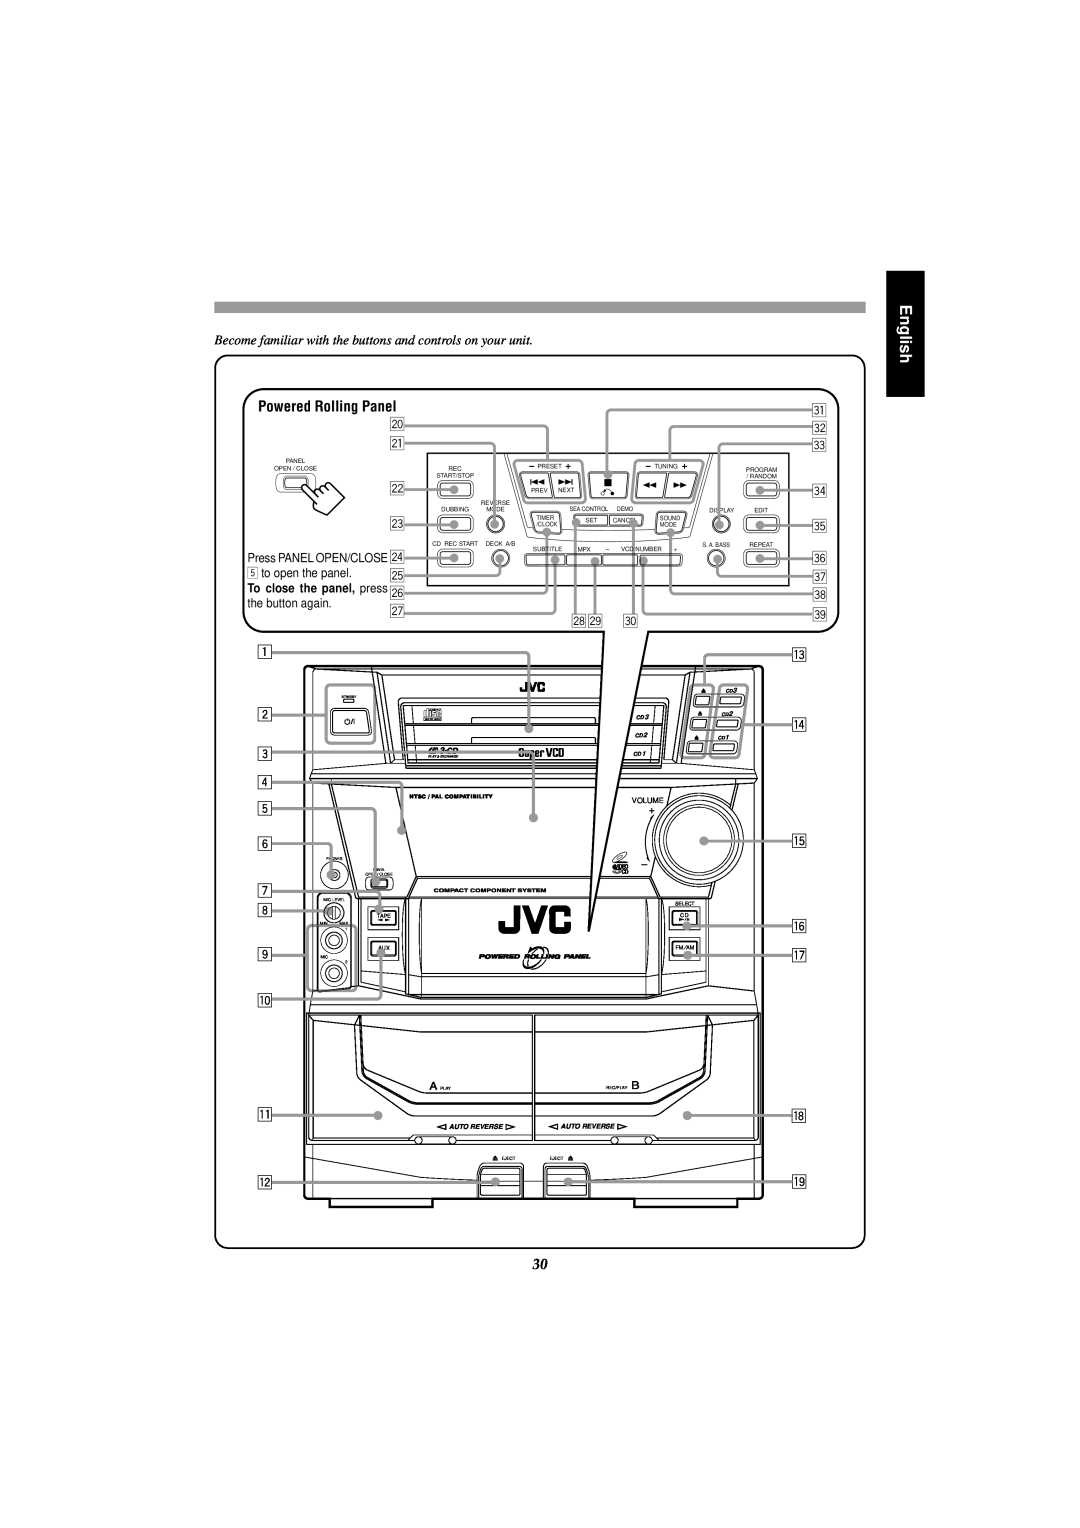 JVC MX-J555V, MX-J585V manual English, z x c 